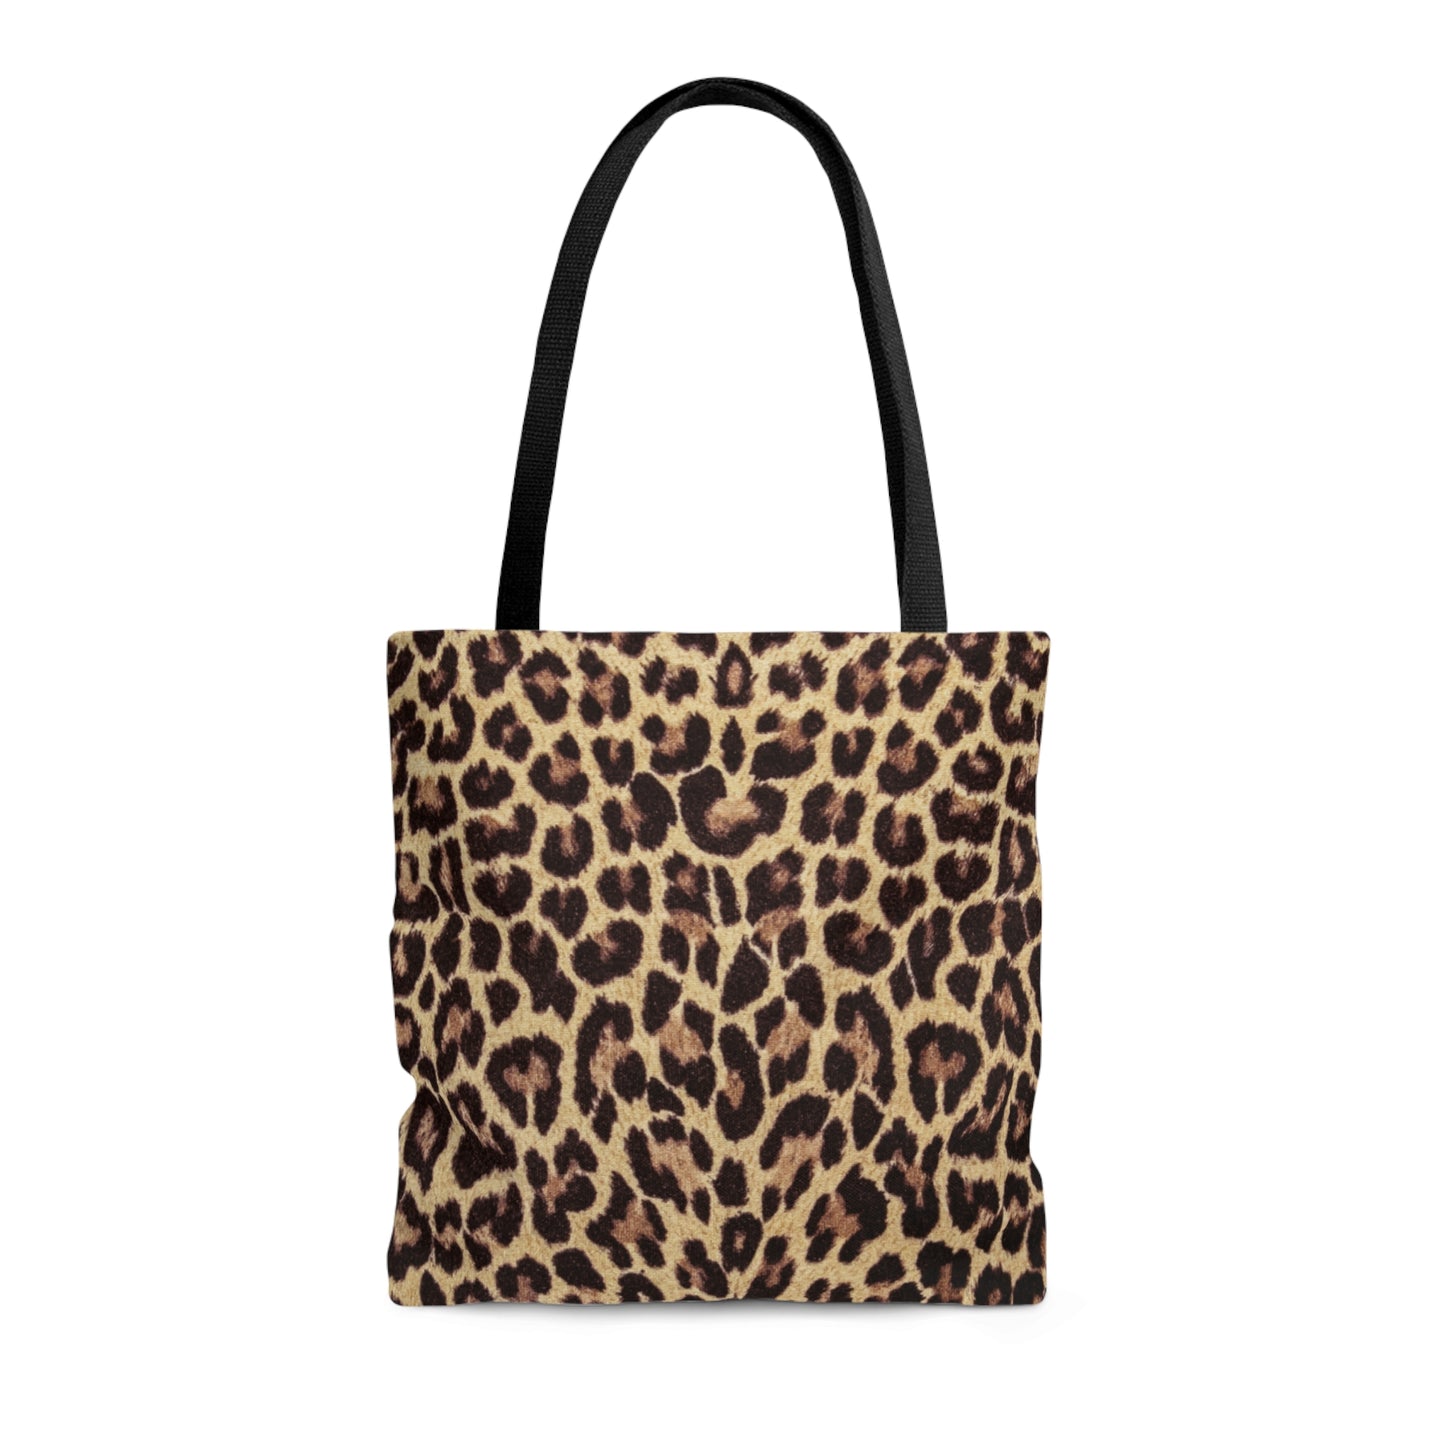 Leopard Print Tote Bag / Leopard Print Bag